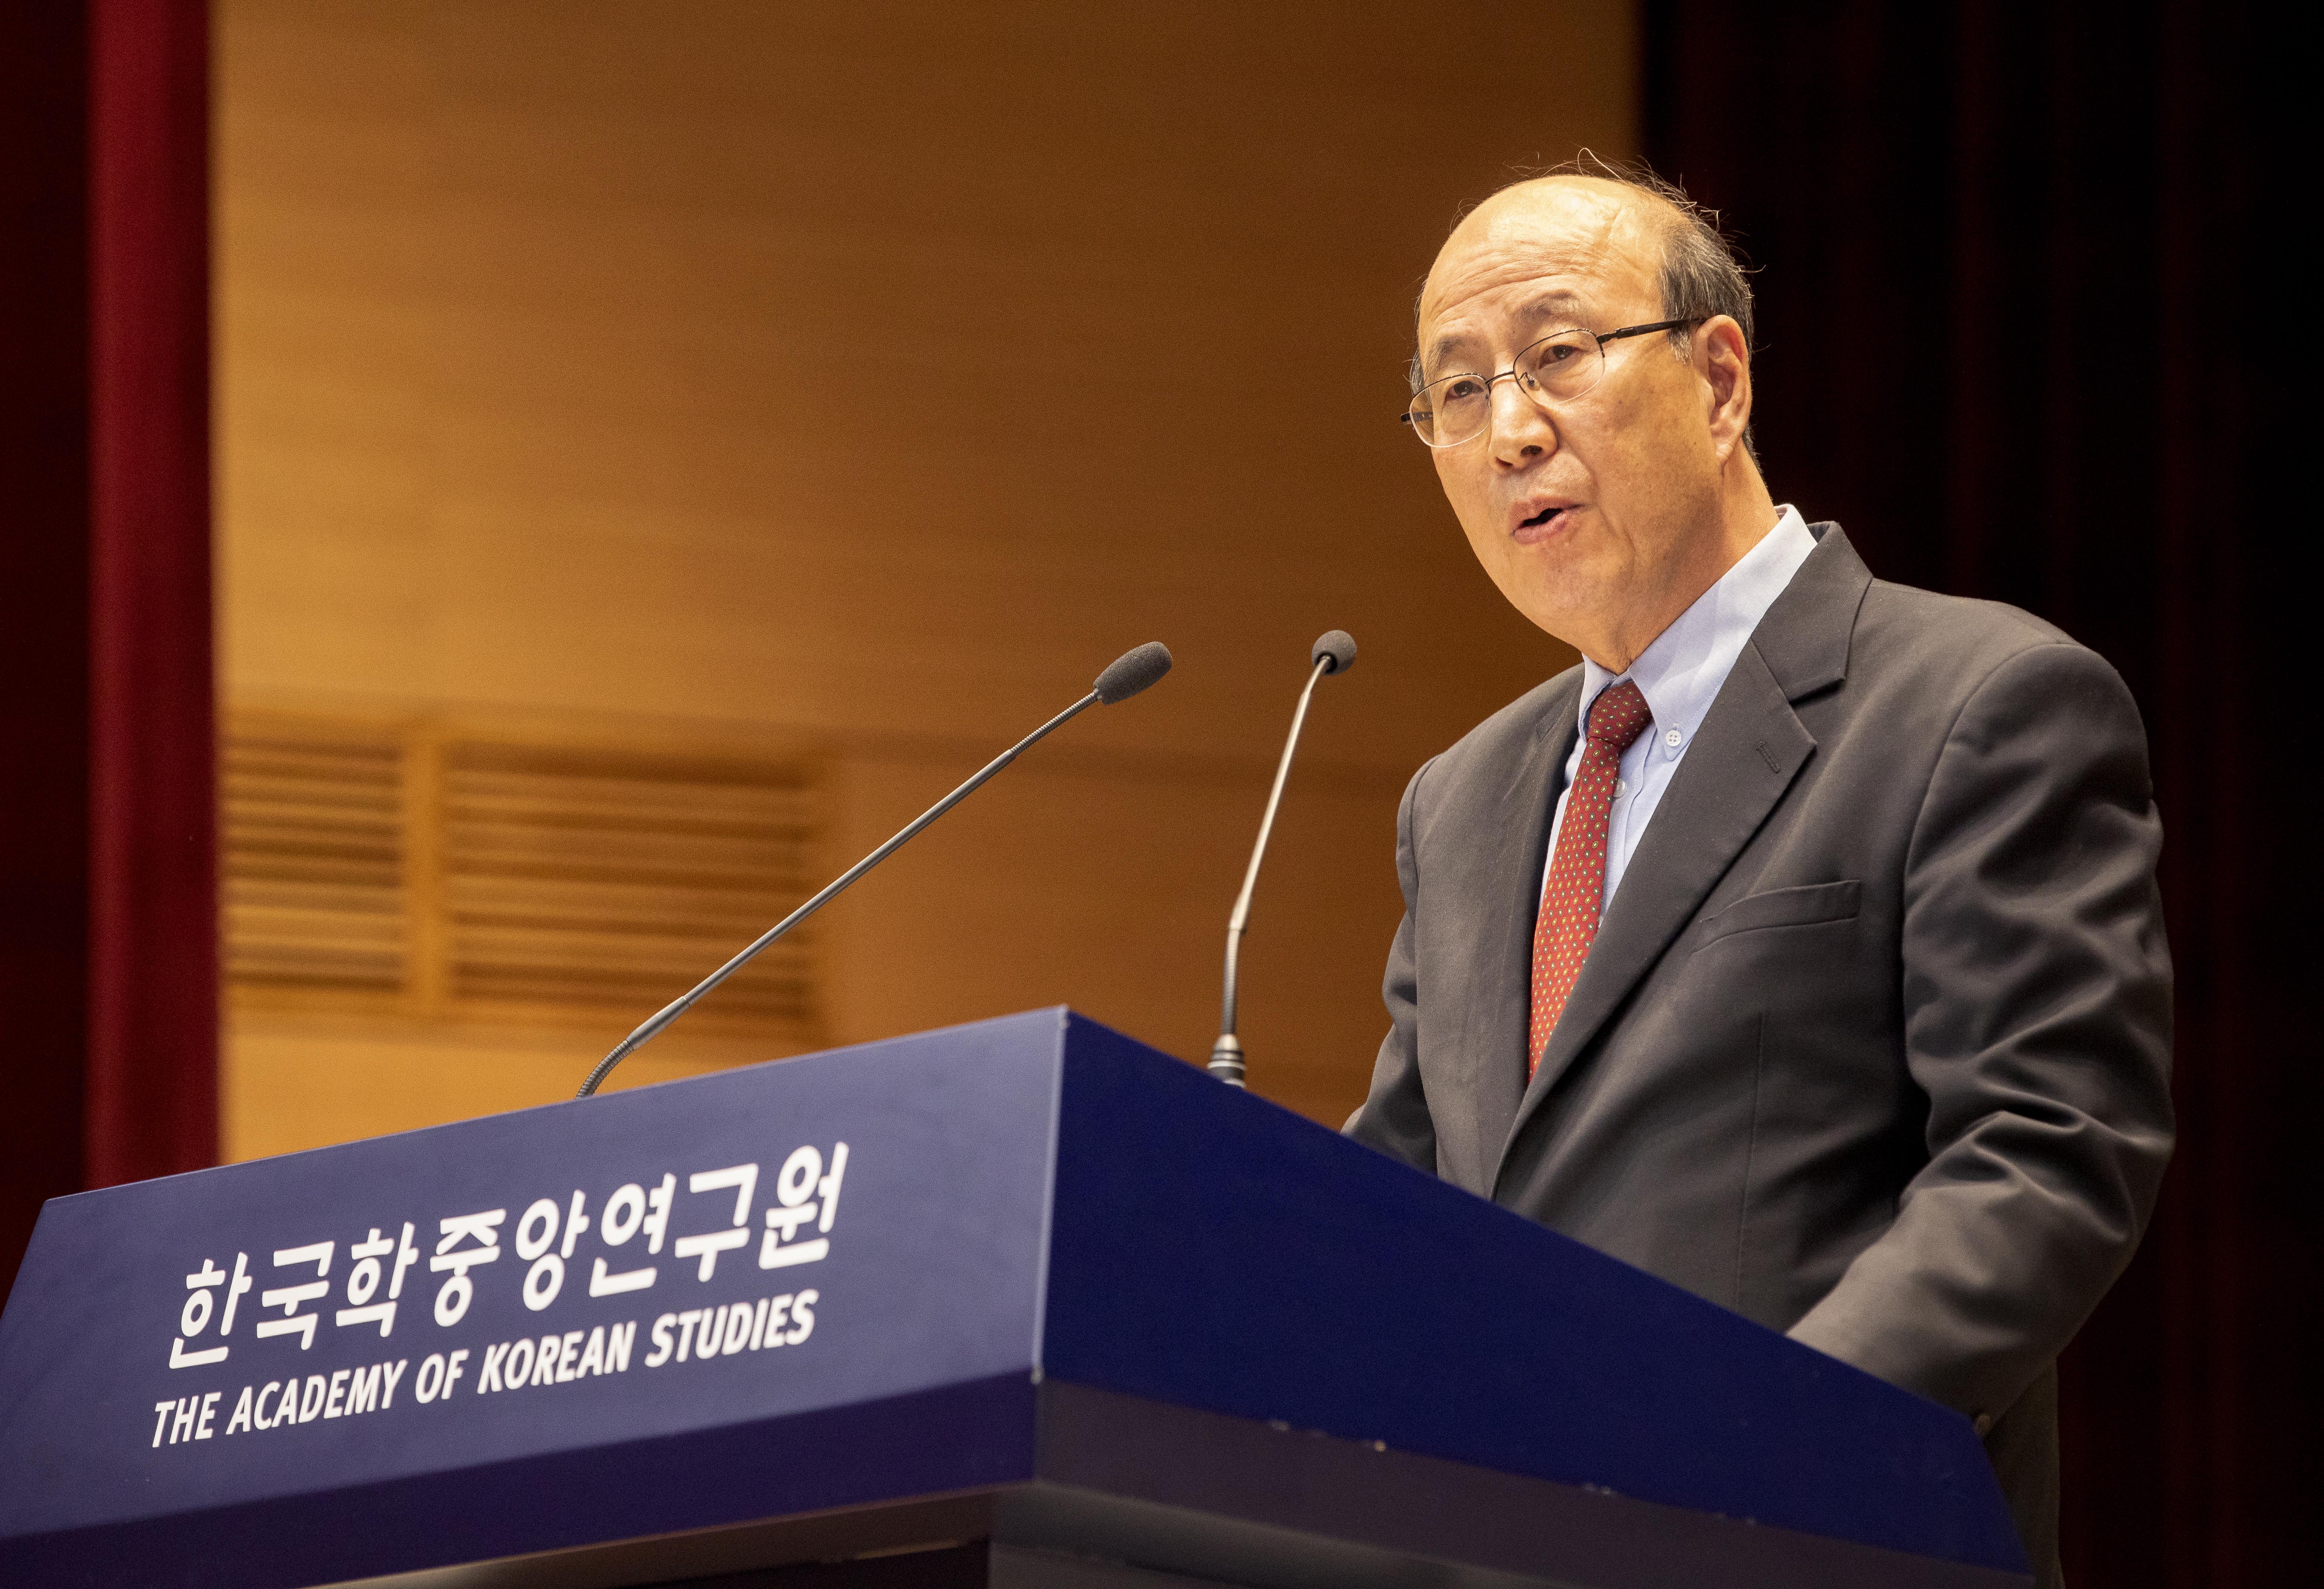 2019년 한국학대학원 전기 학위수여식